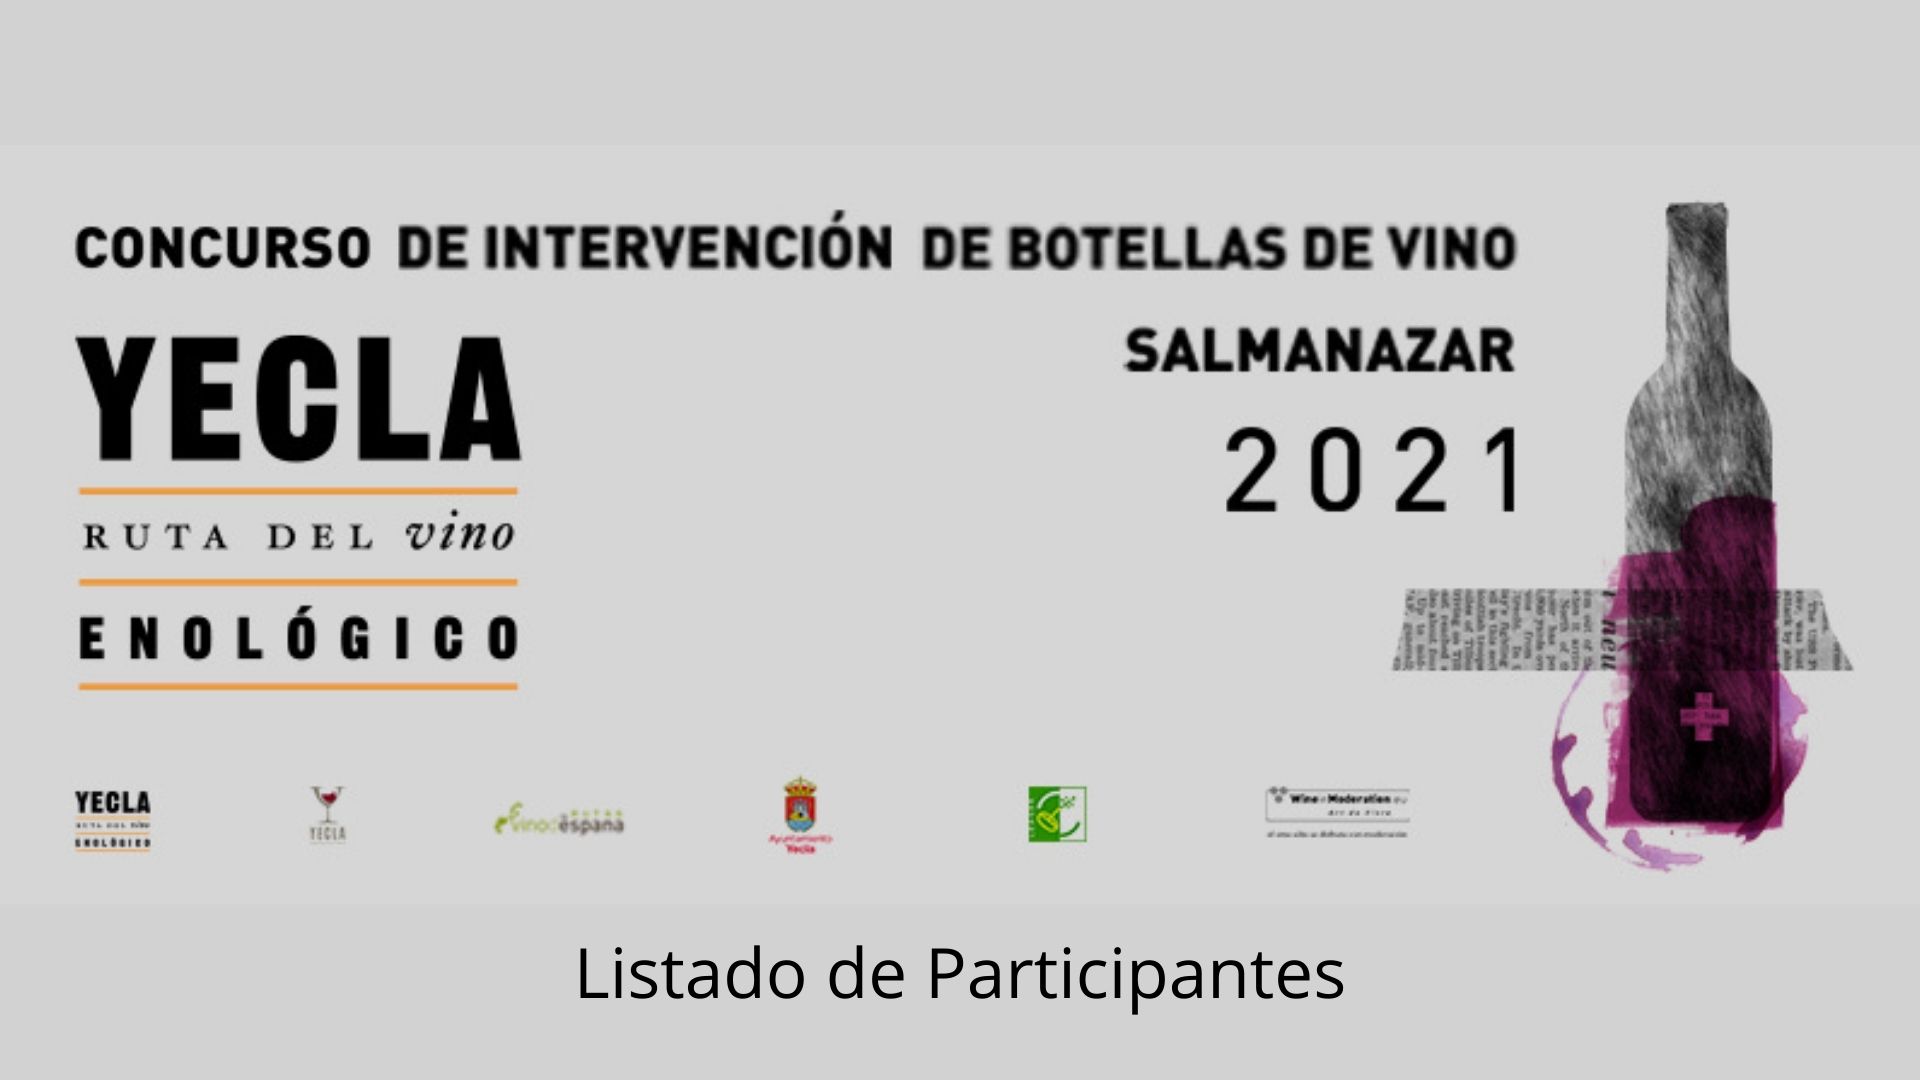 Listado de participantes seleccionados I concurso de intervención de botellas de vino Salmanazar